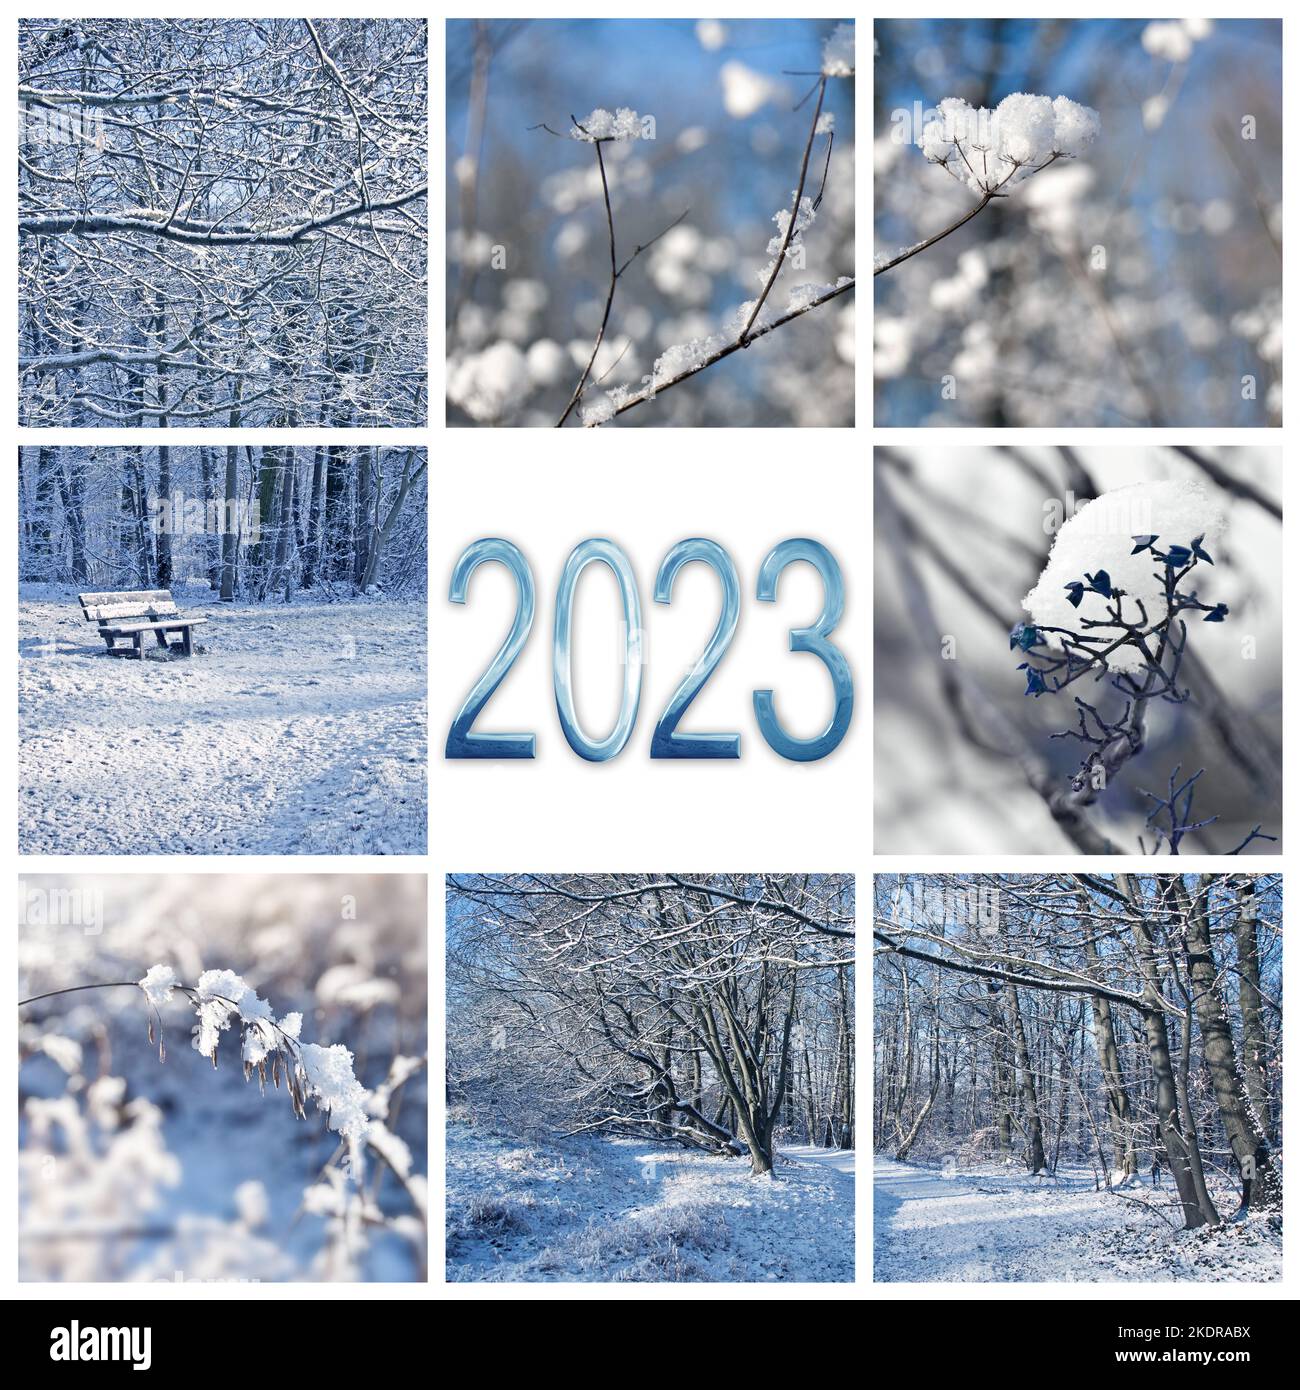 2023, paisajes de nieve e invierno, tarjeta de felicitación cuadrada de año nuevo Foto de stock